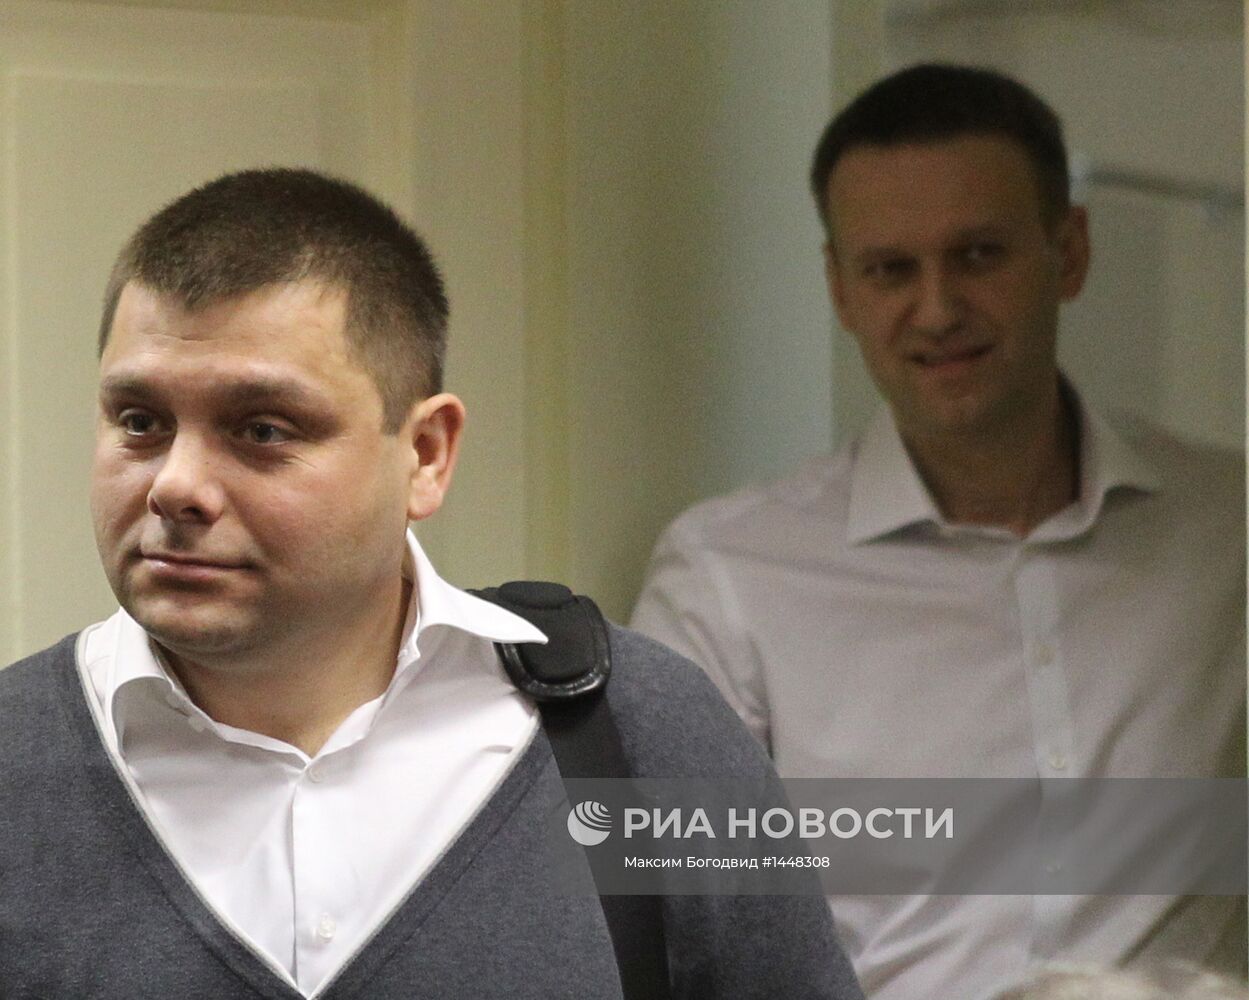 Суд в Кирове начал рассмотрение дела о хищениях в "Кировлесе"